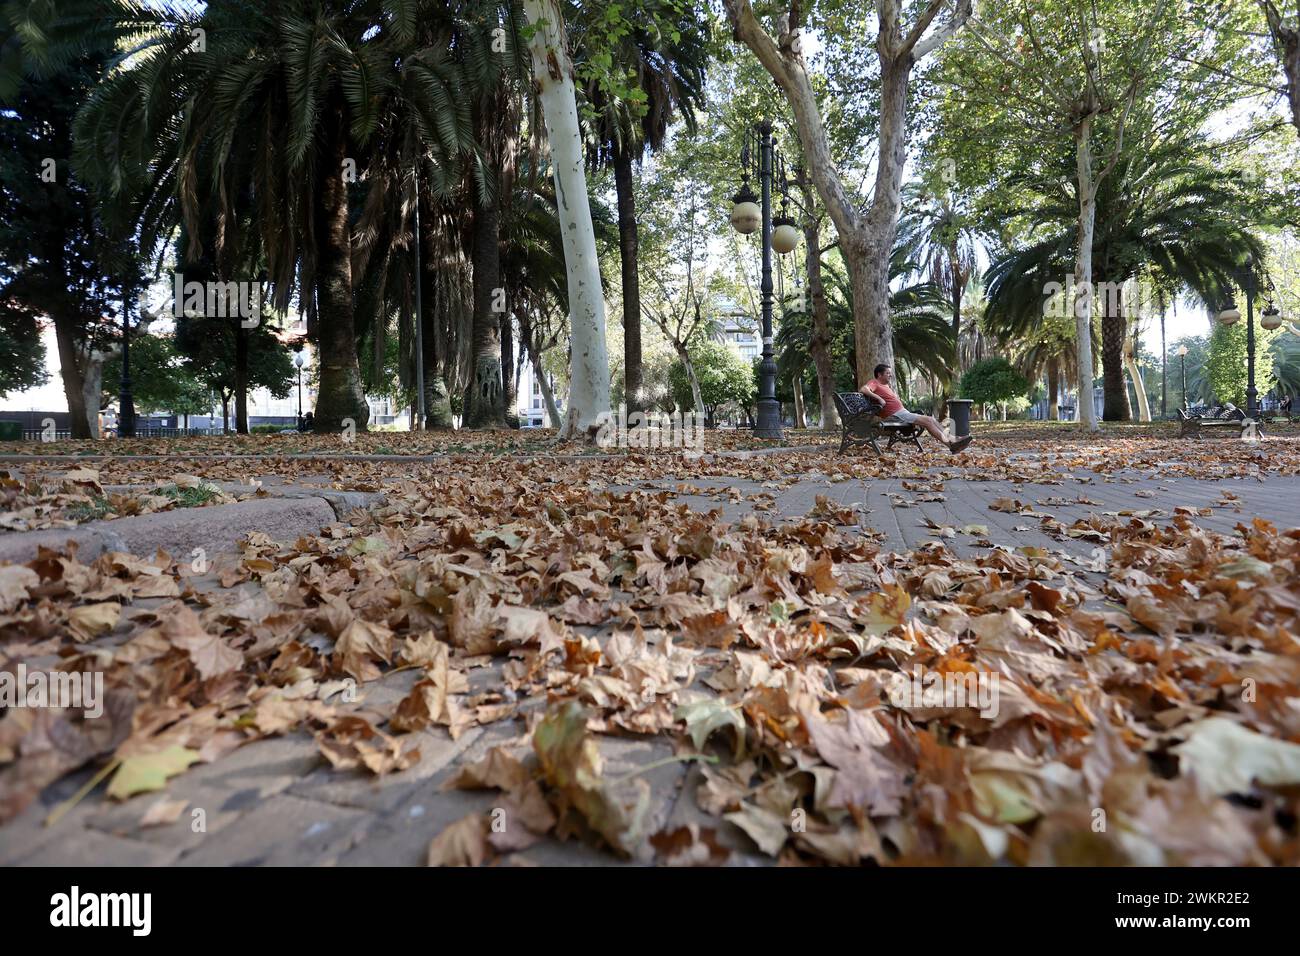 Córdoba, 13.08.2023. Colón Park mit einem herbstlichen Auftritt im August. Foto: Valerio Merino. Archcor. Quelle: Album / Archivo ABC / Valerio Merino Stockfoto